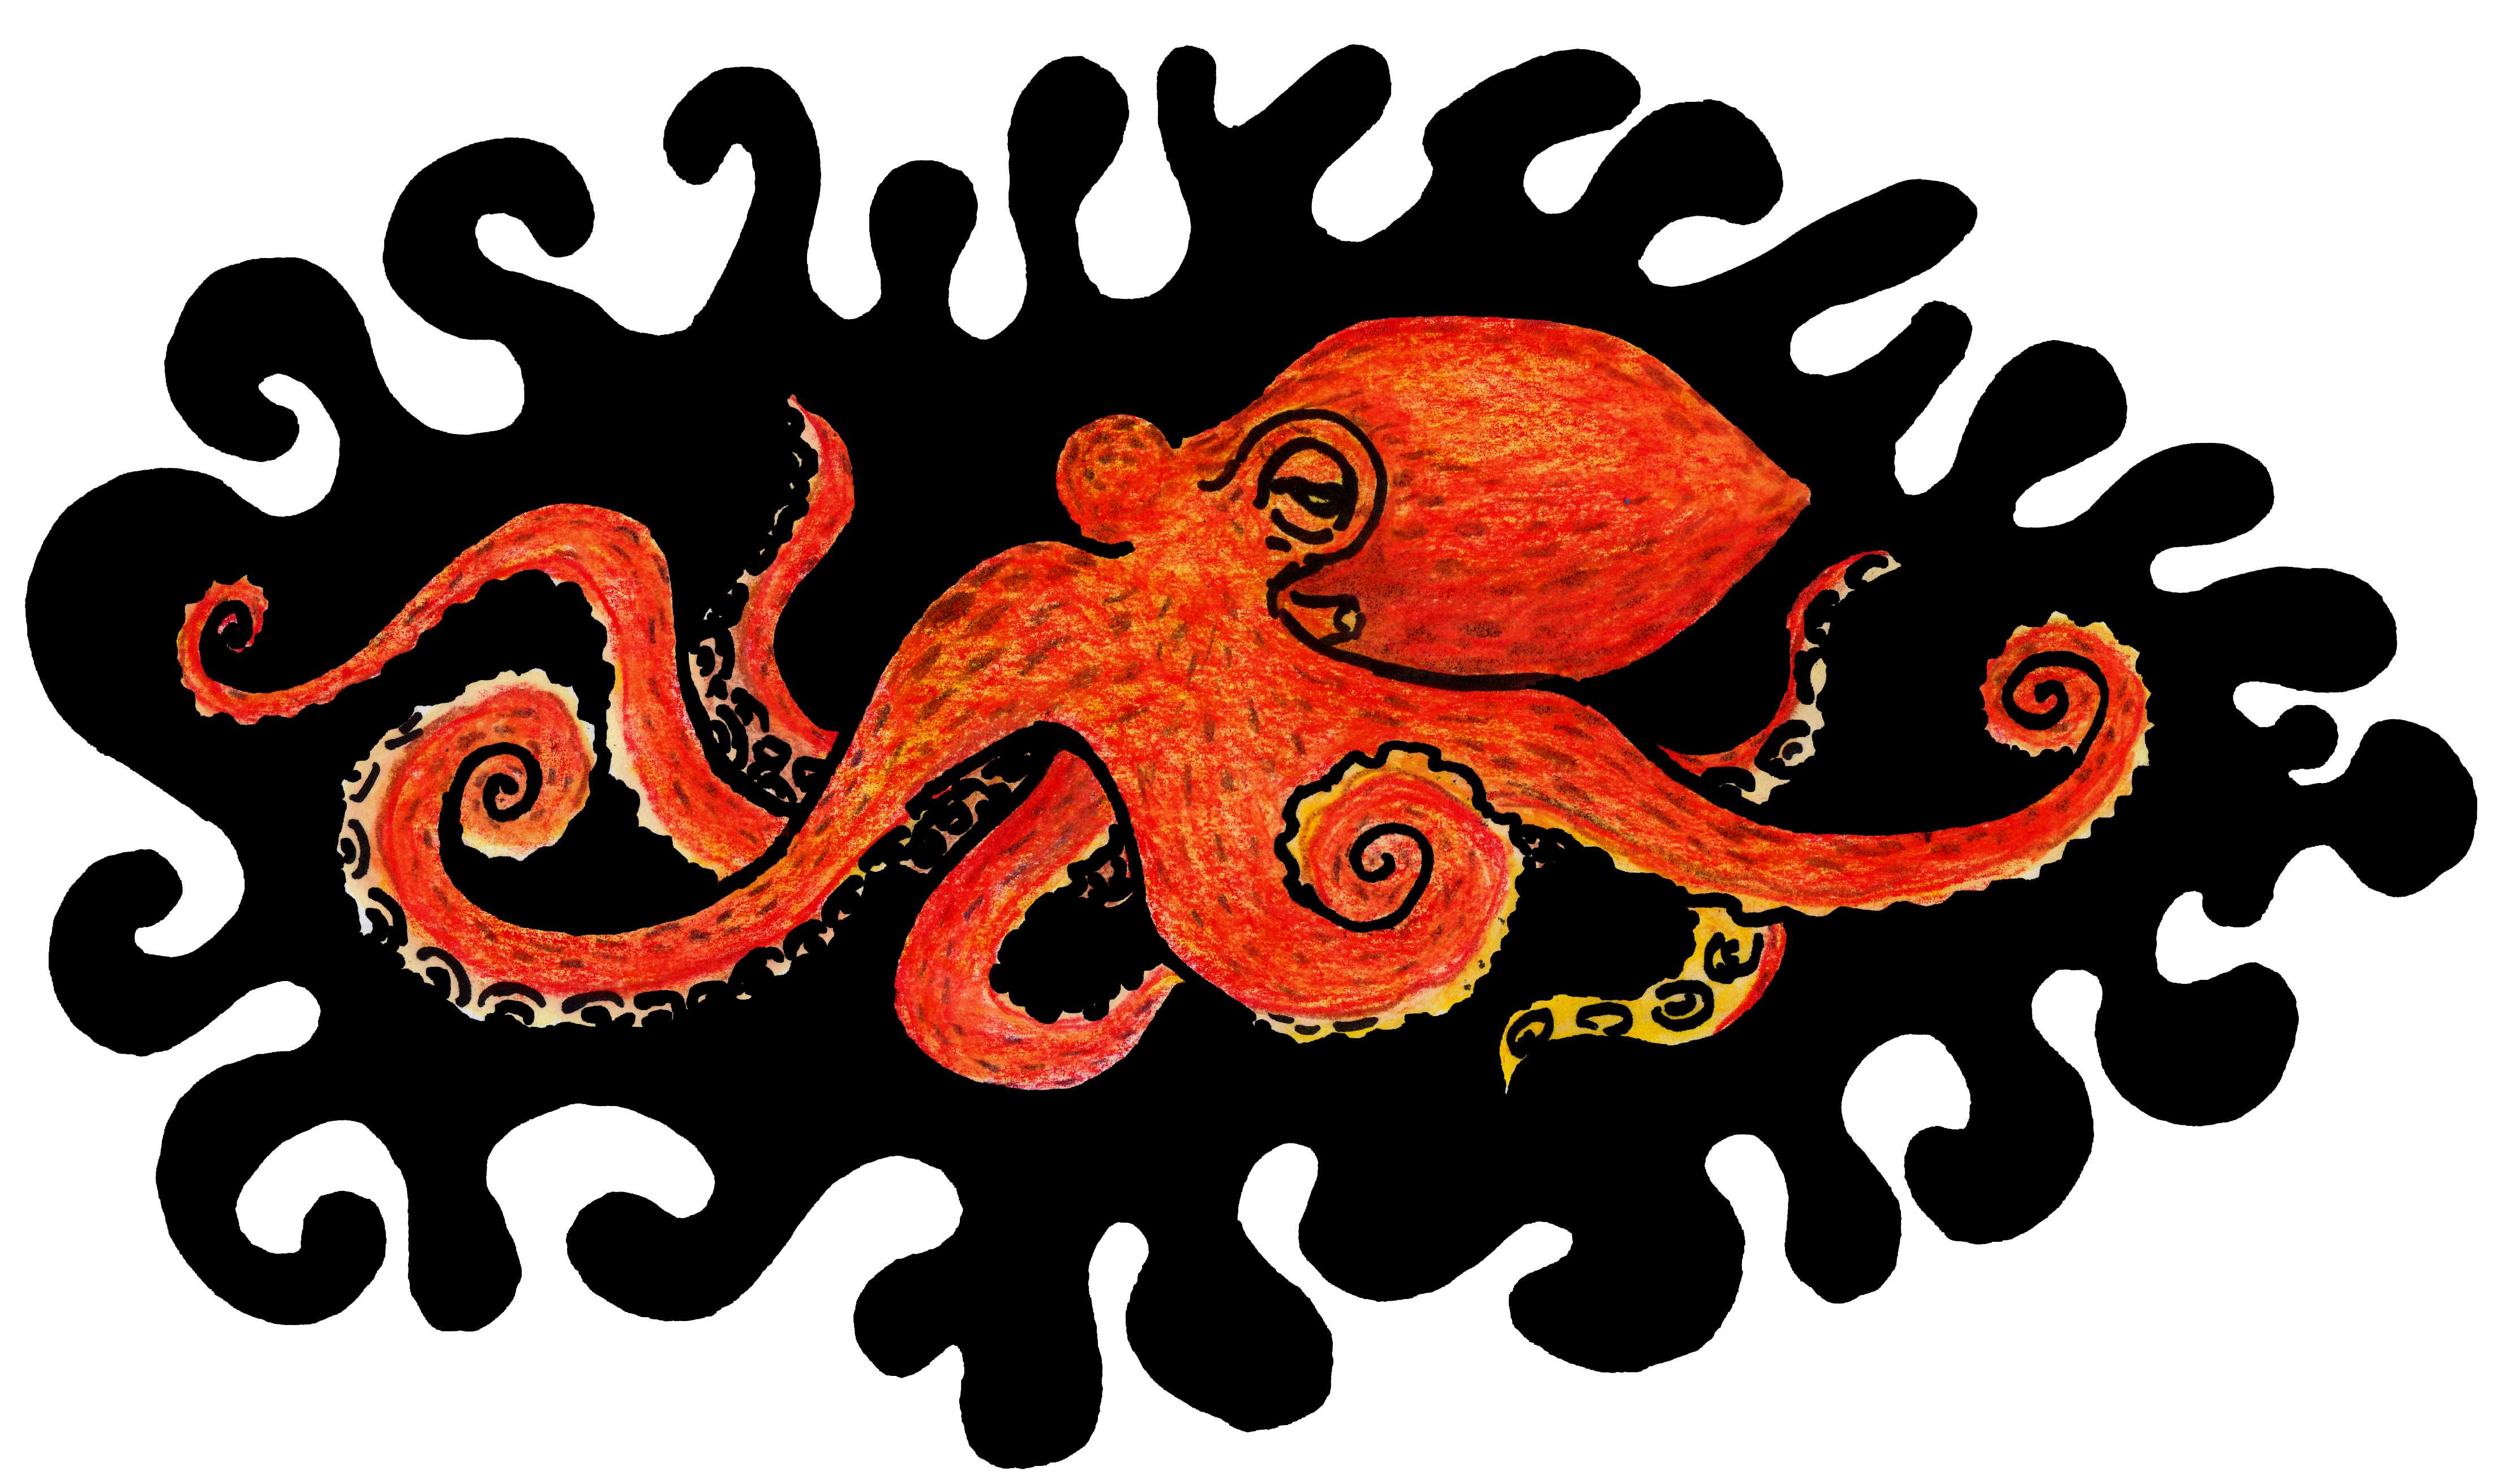 Your Standard Orange Octopus